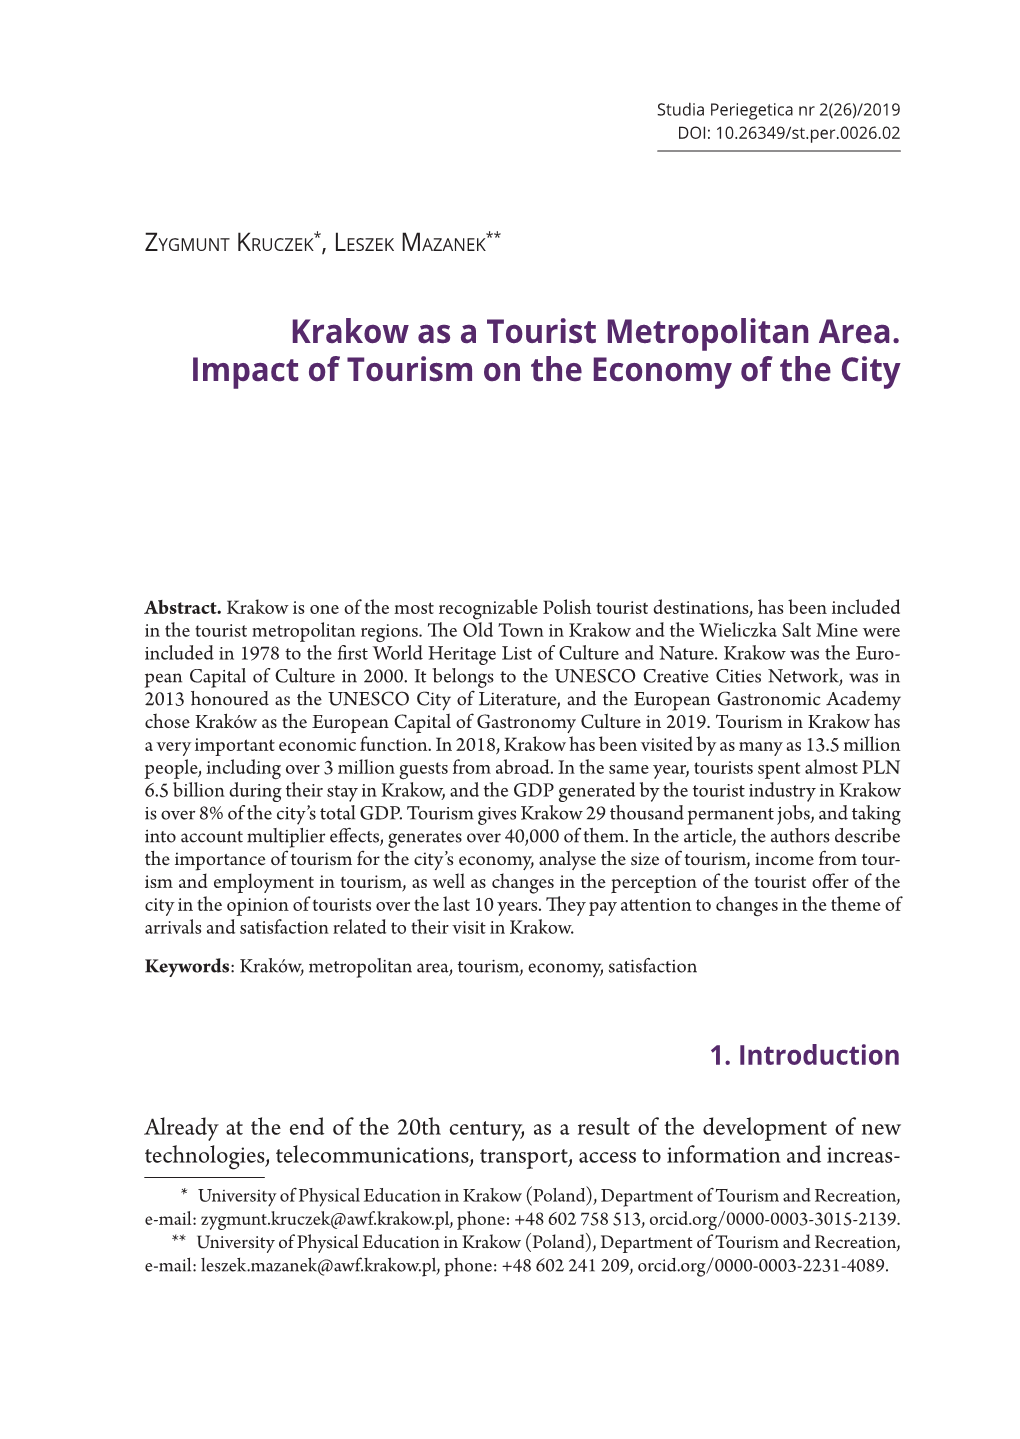 Krakow As a Tourist Metropolitan Area. Impact of Tourism on the Economy of the City